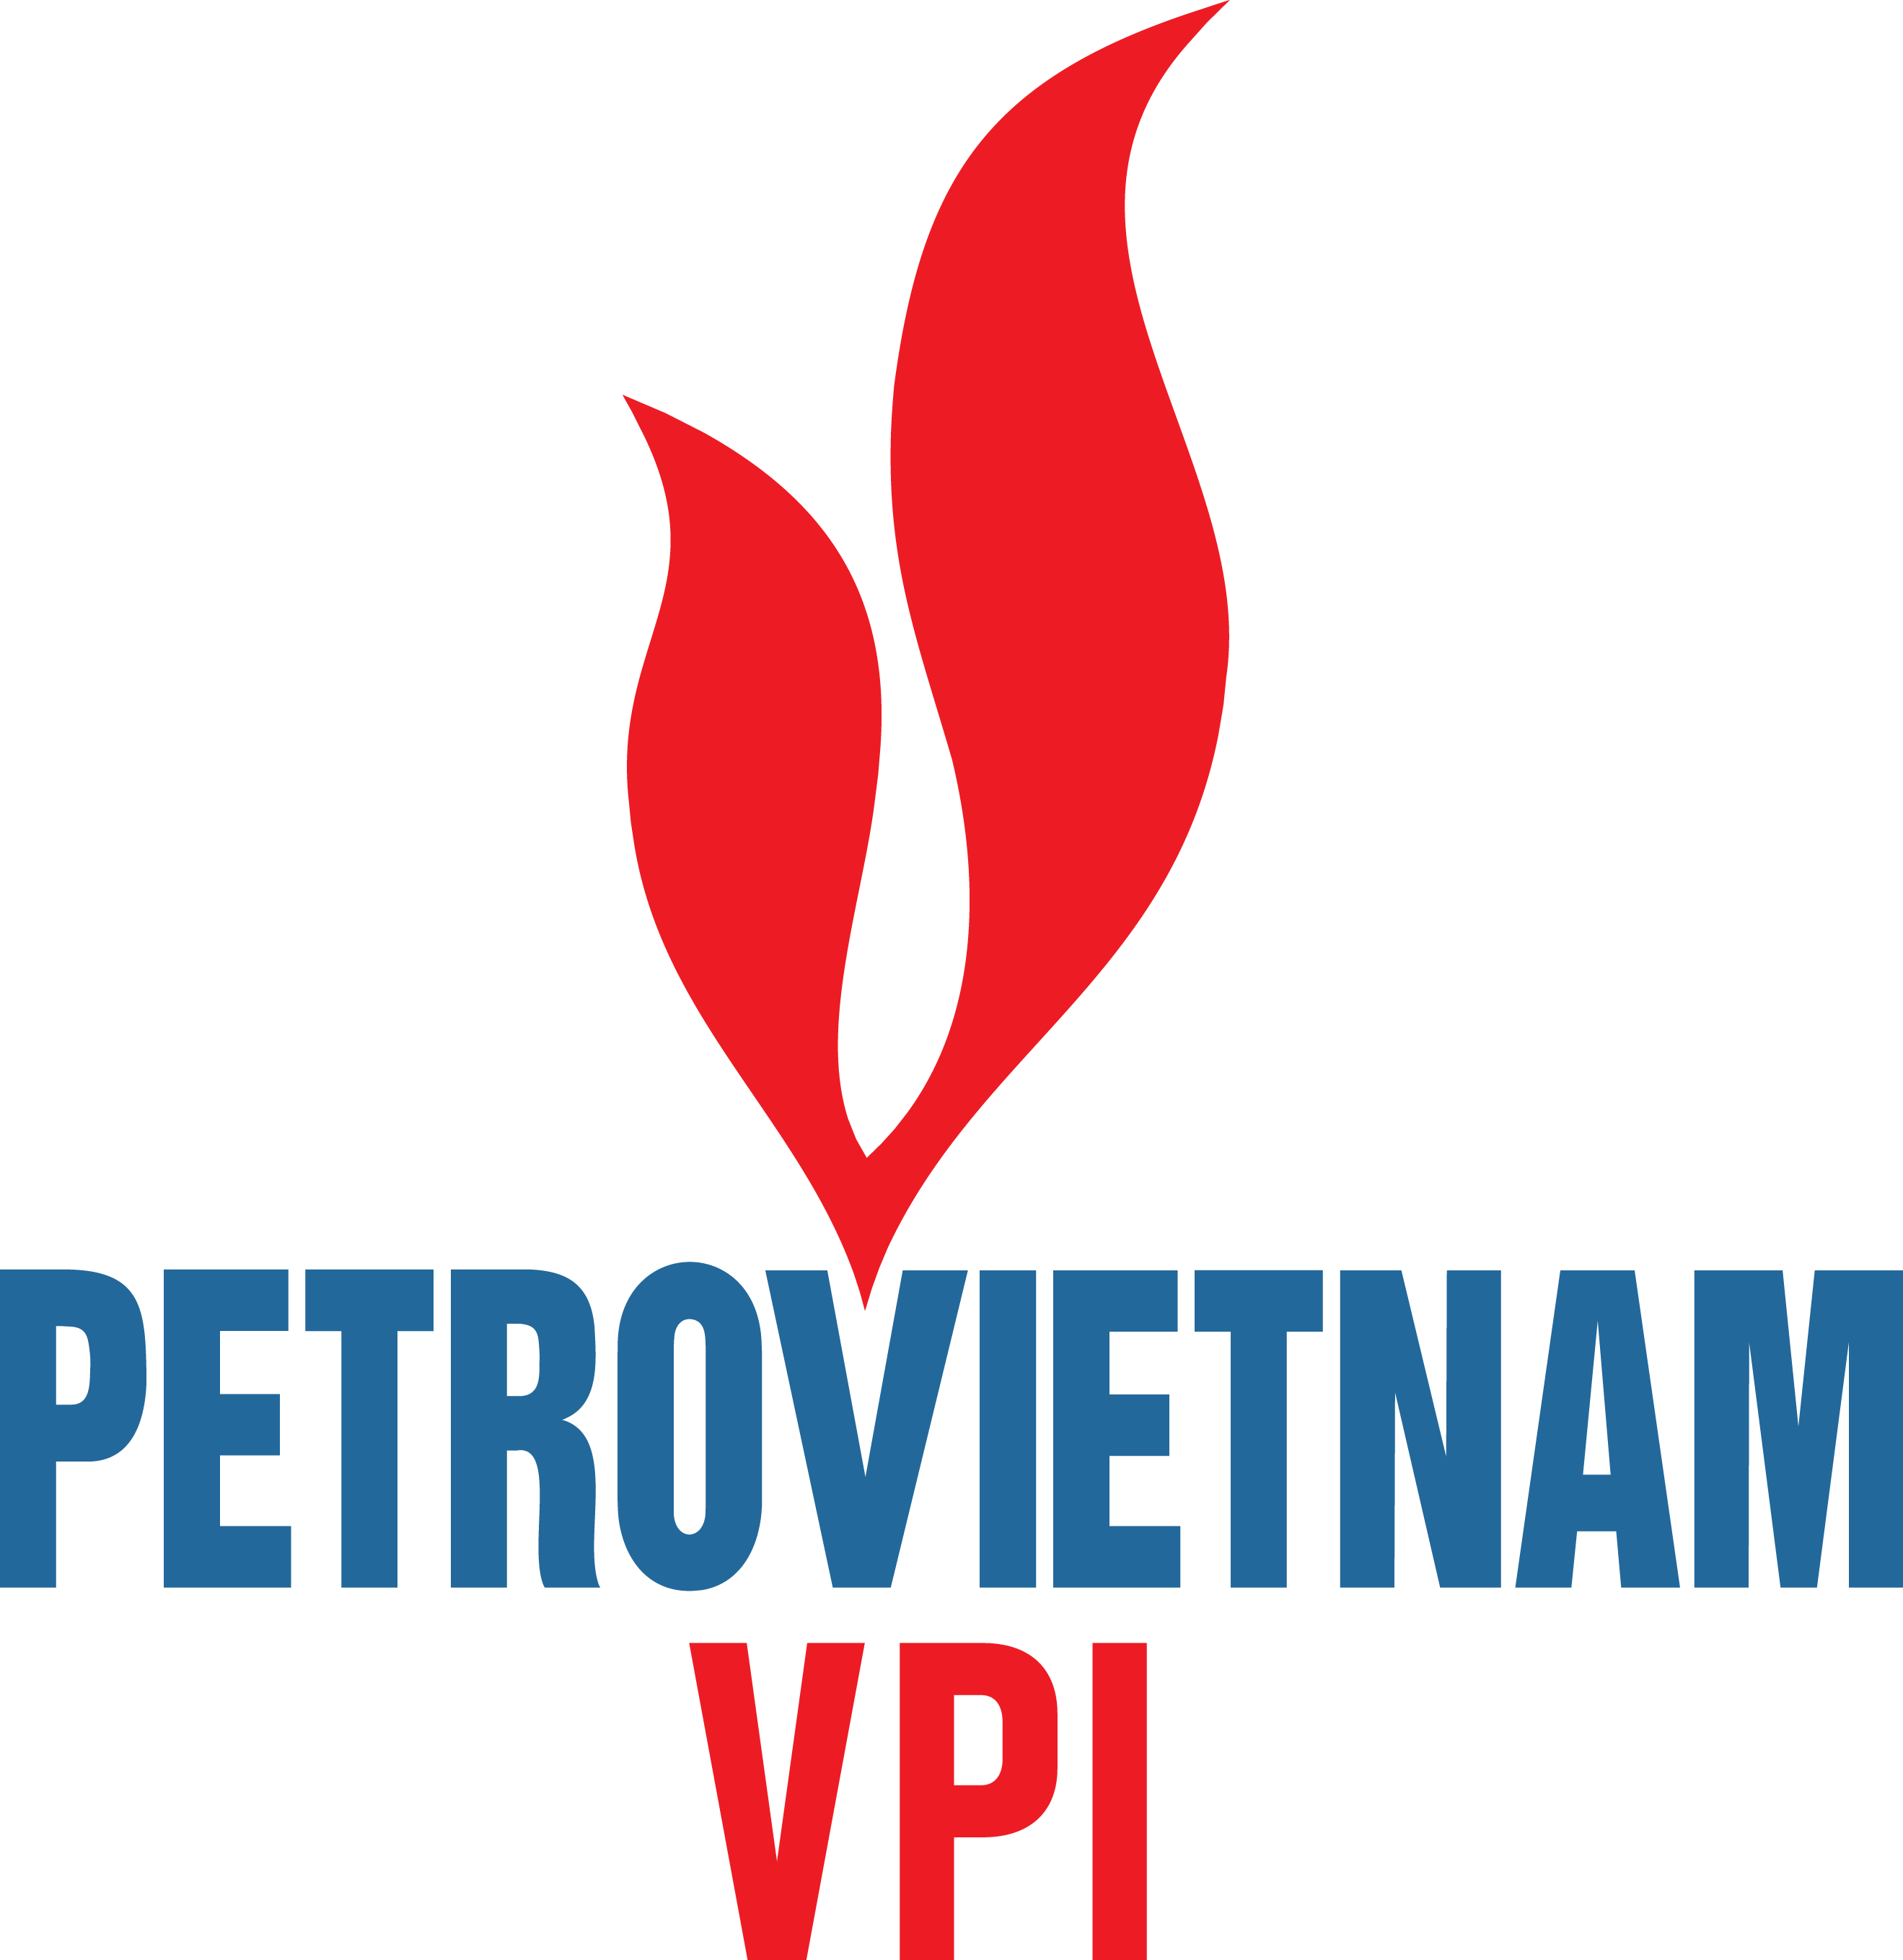 Vietnam Petroleum Institute